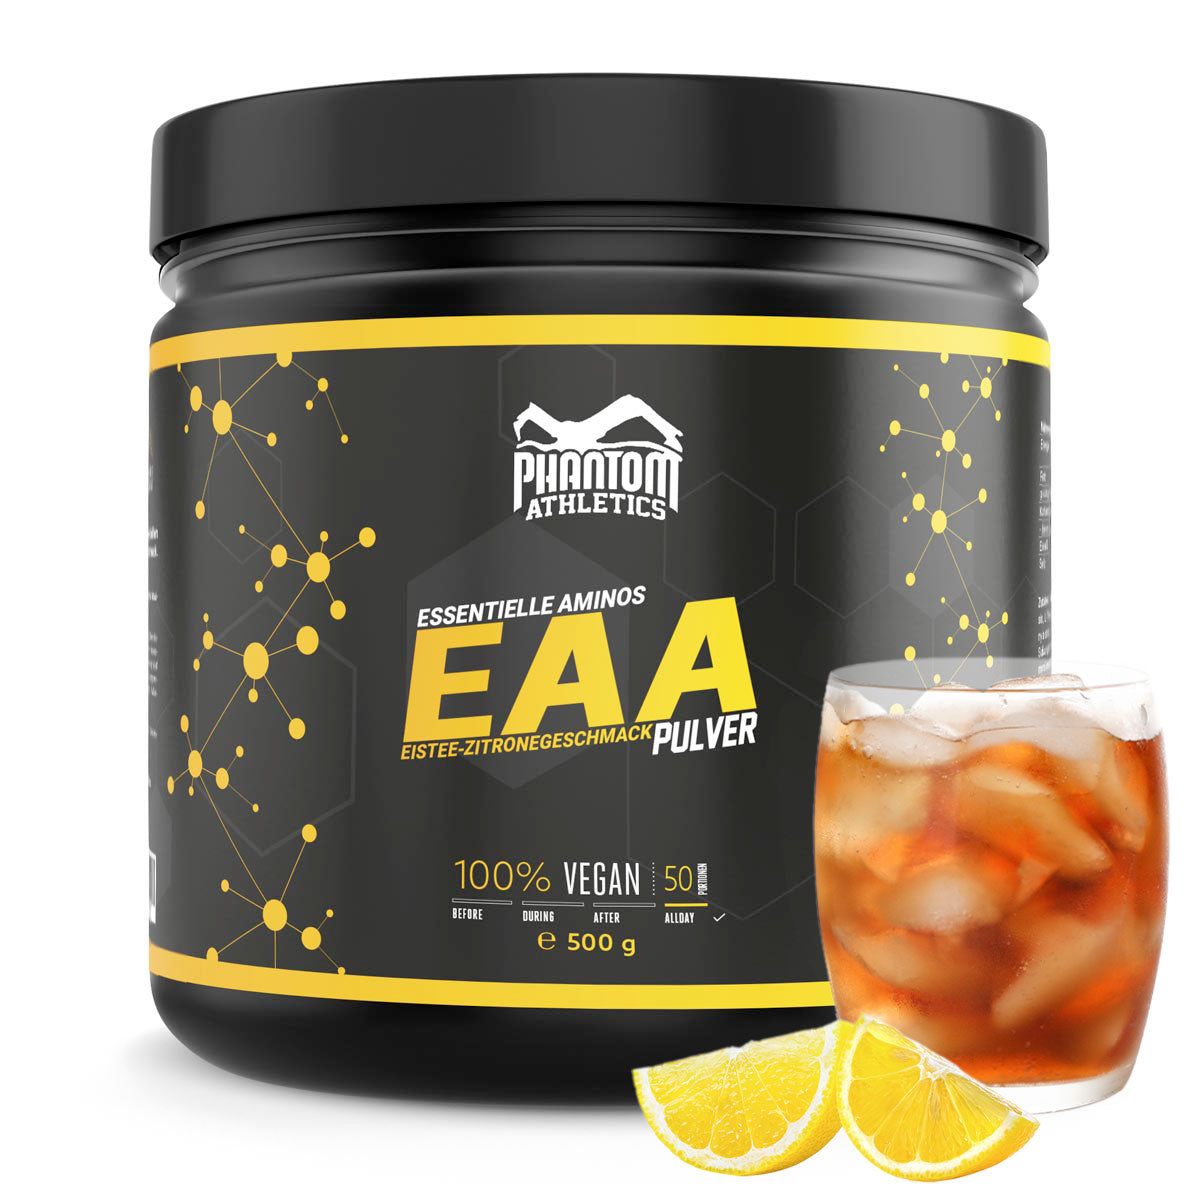 Phantom EAA - essentiella aminosyror med iste citronsmak. För optimal vård inom kampsport.